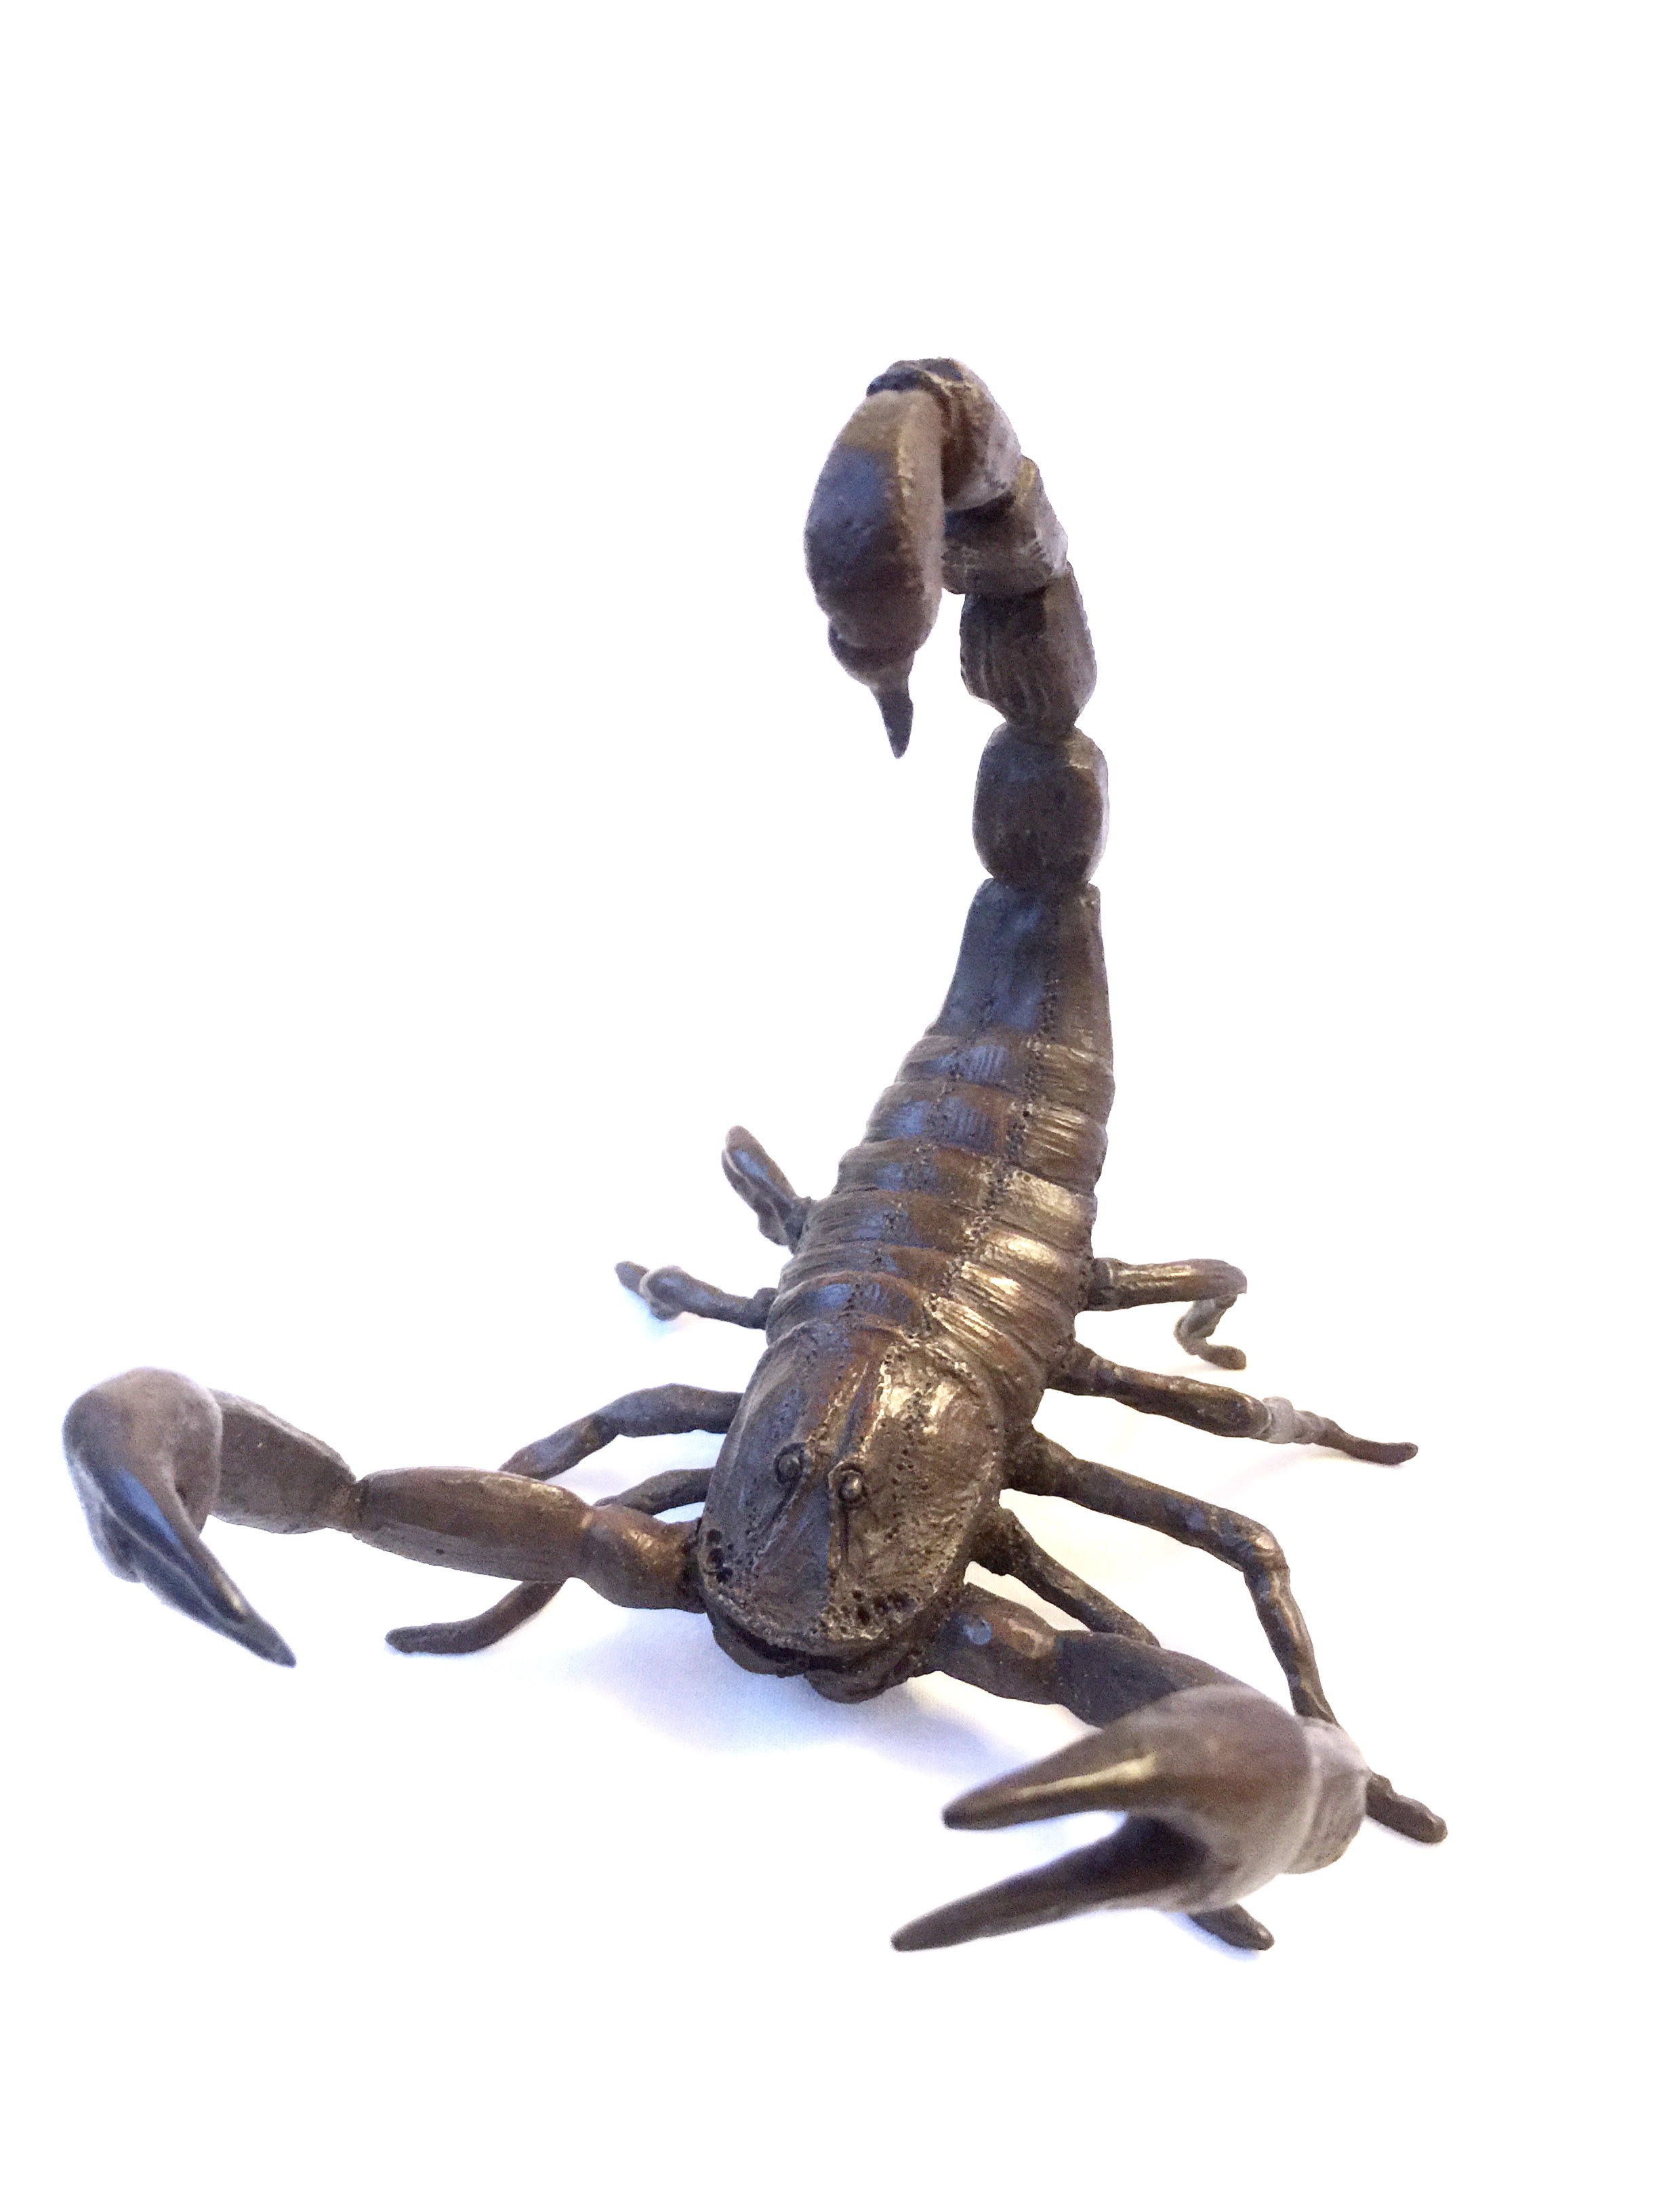 Scorpion 2.jpg